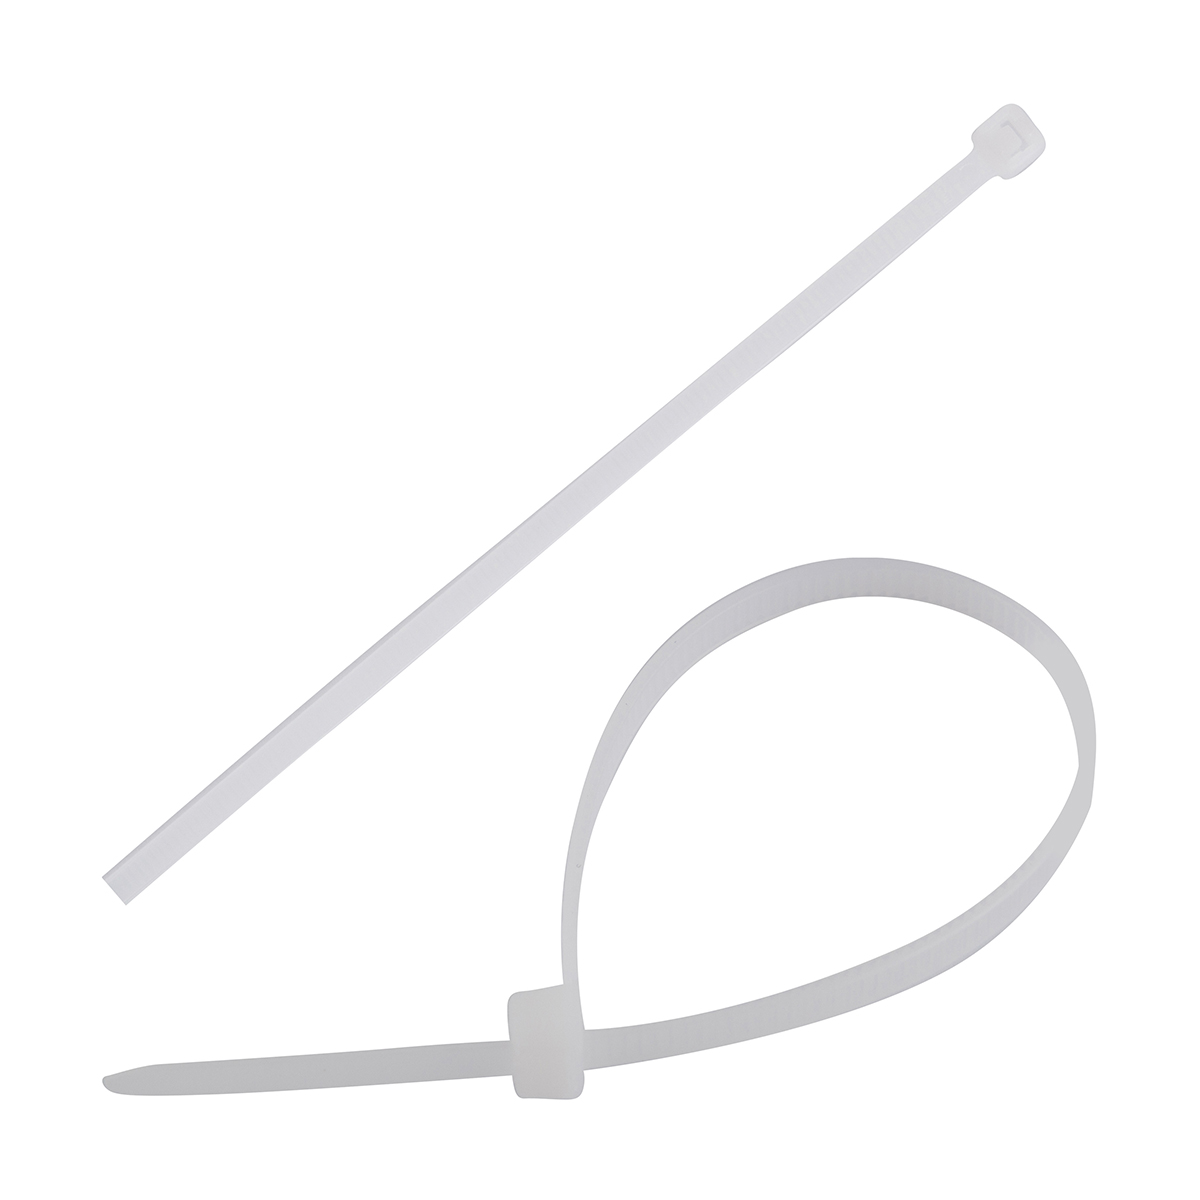 Хомуты нейлон 4,8 х 200 мм (набор 100 шт.) Белые  PARK кабельные хомуты cimco